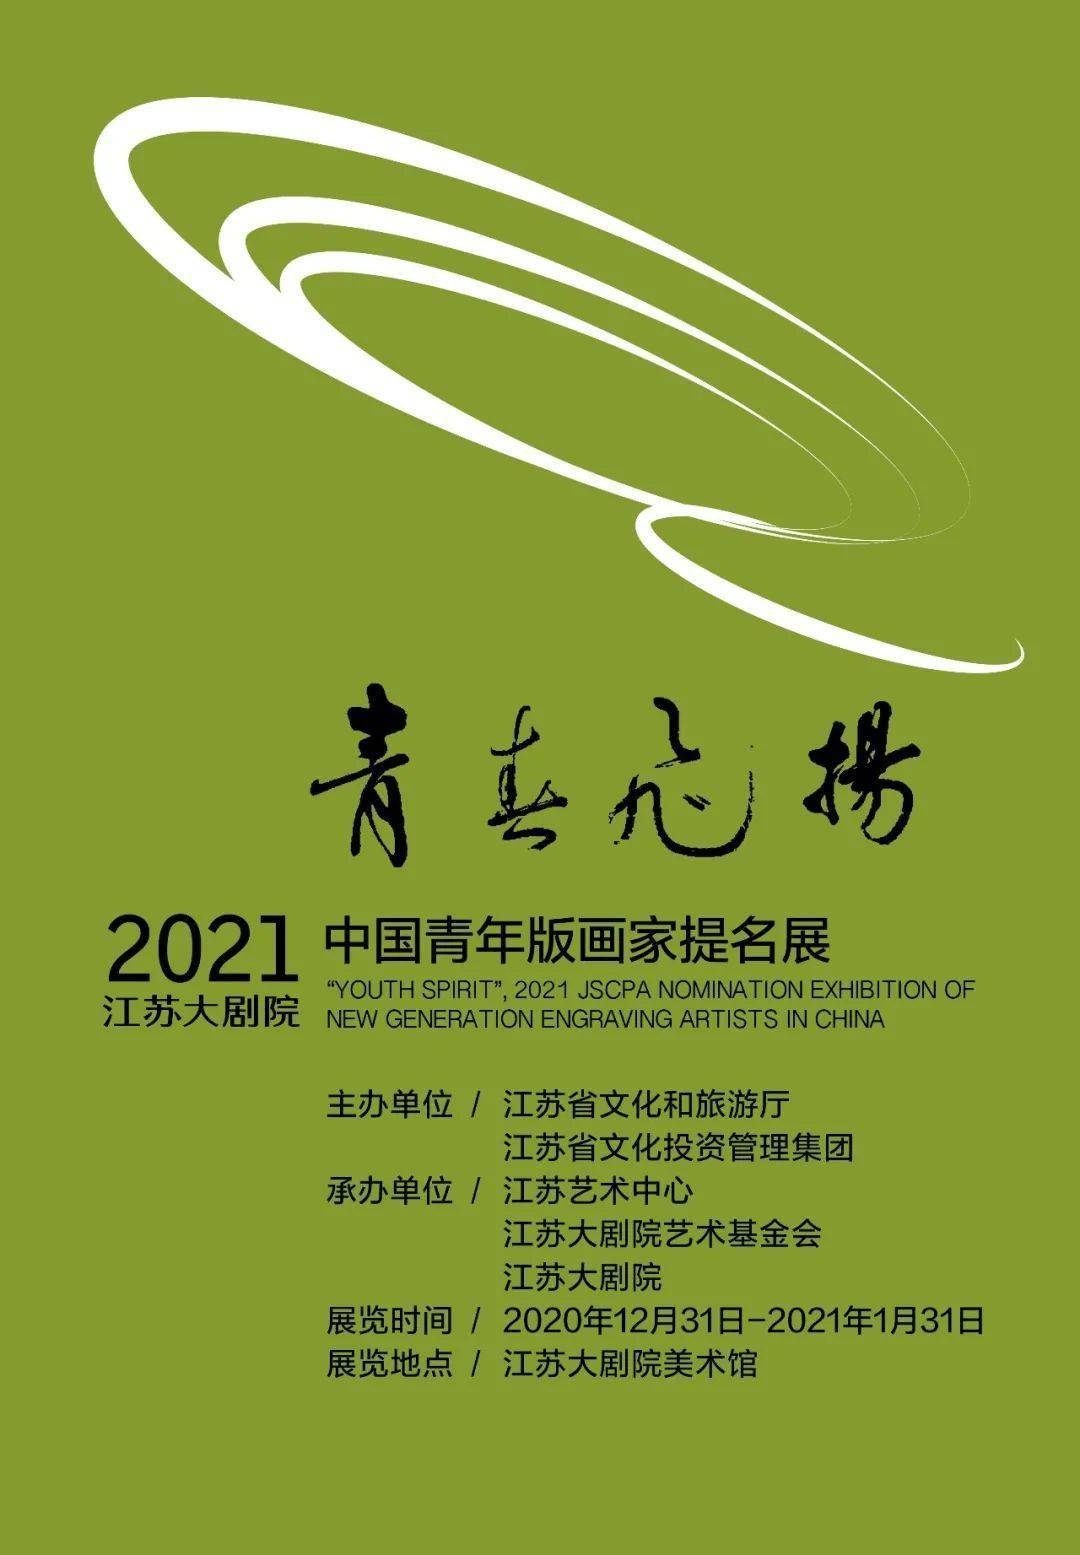 展览预告 | 青春飞扬2021中国青年版画家提名展 开幕在即